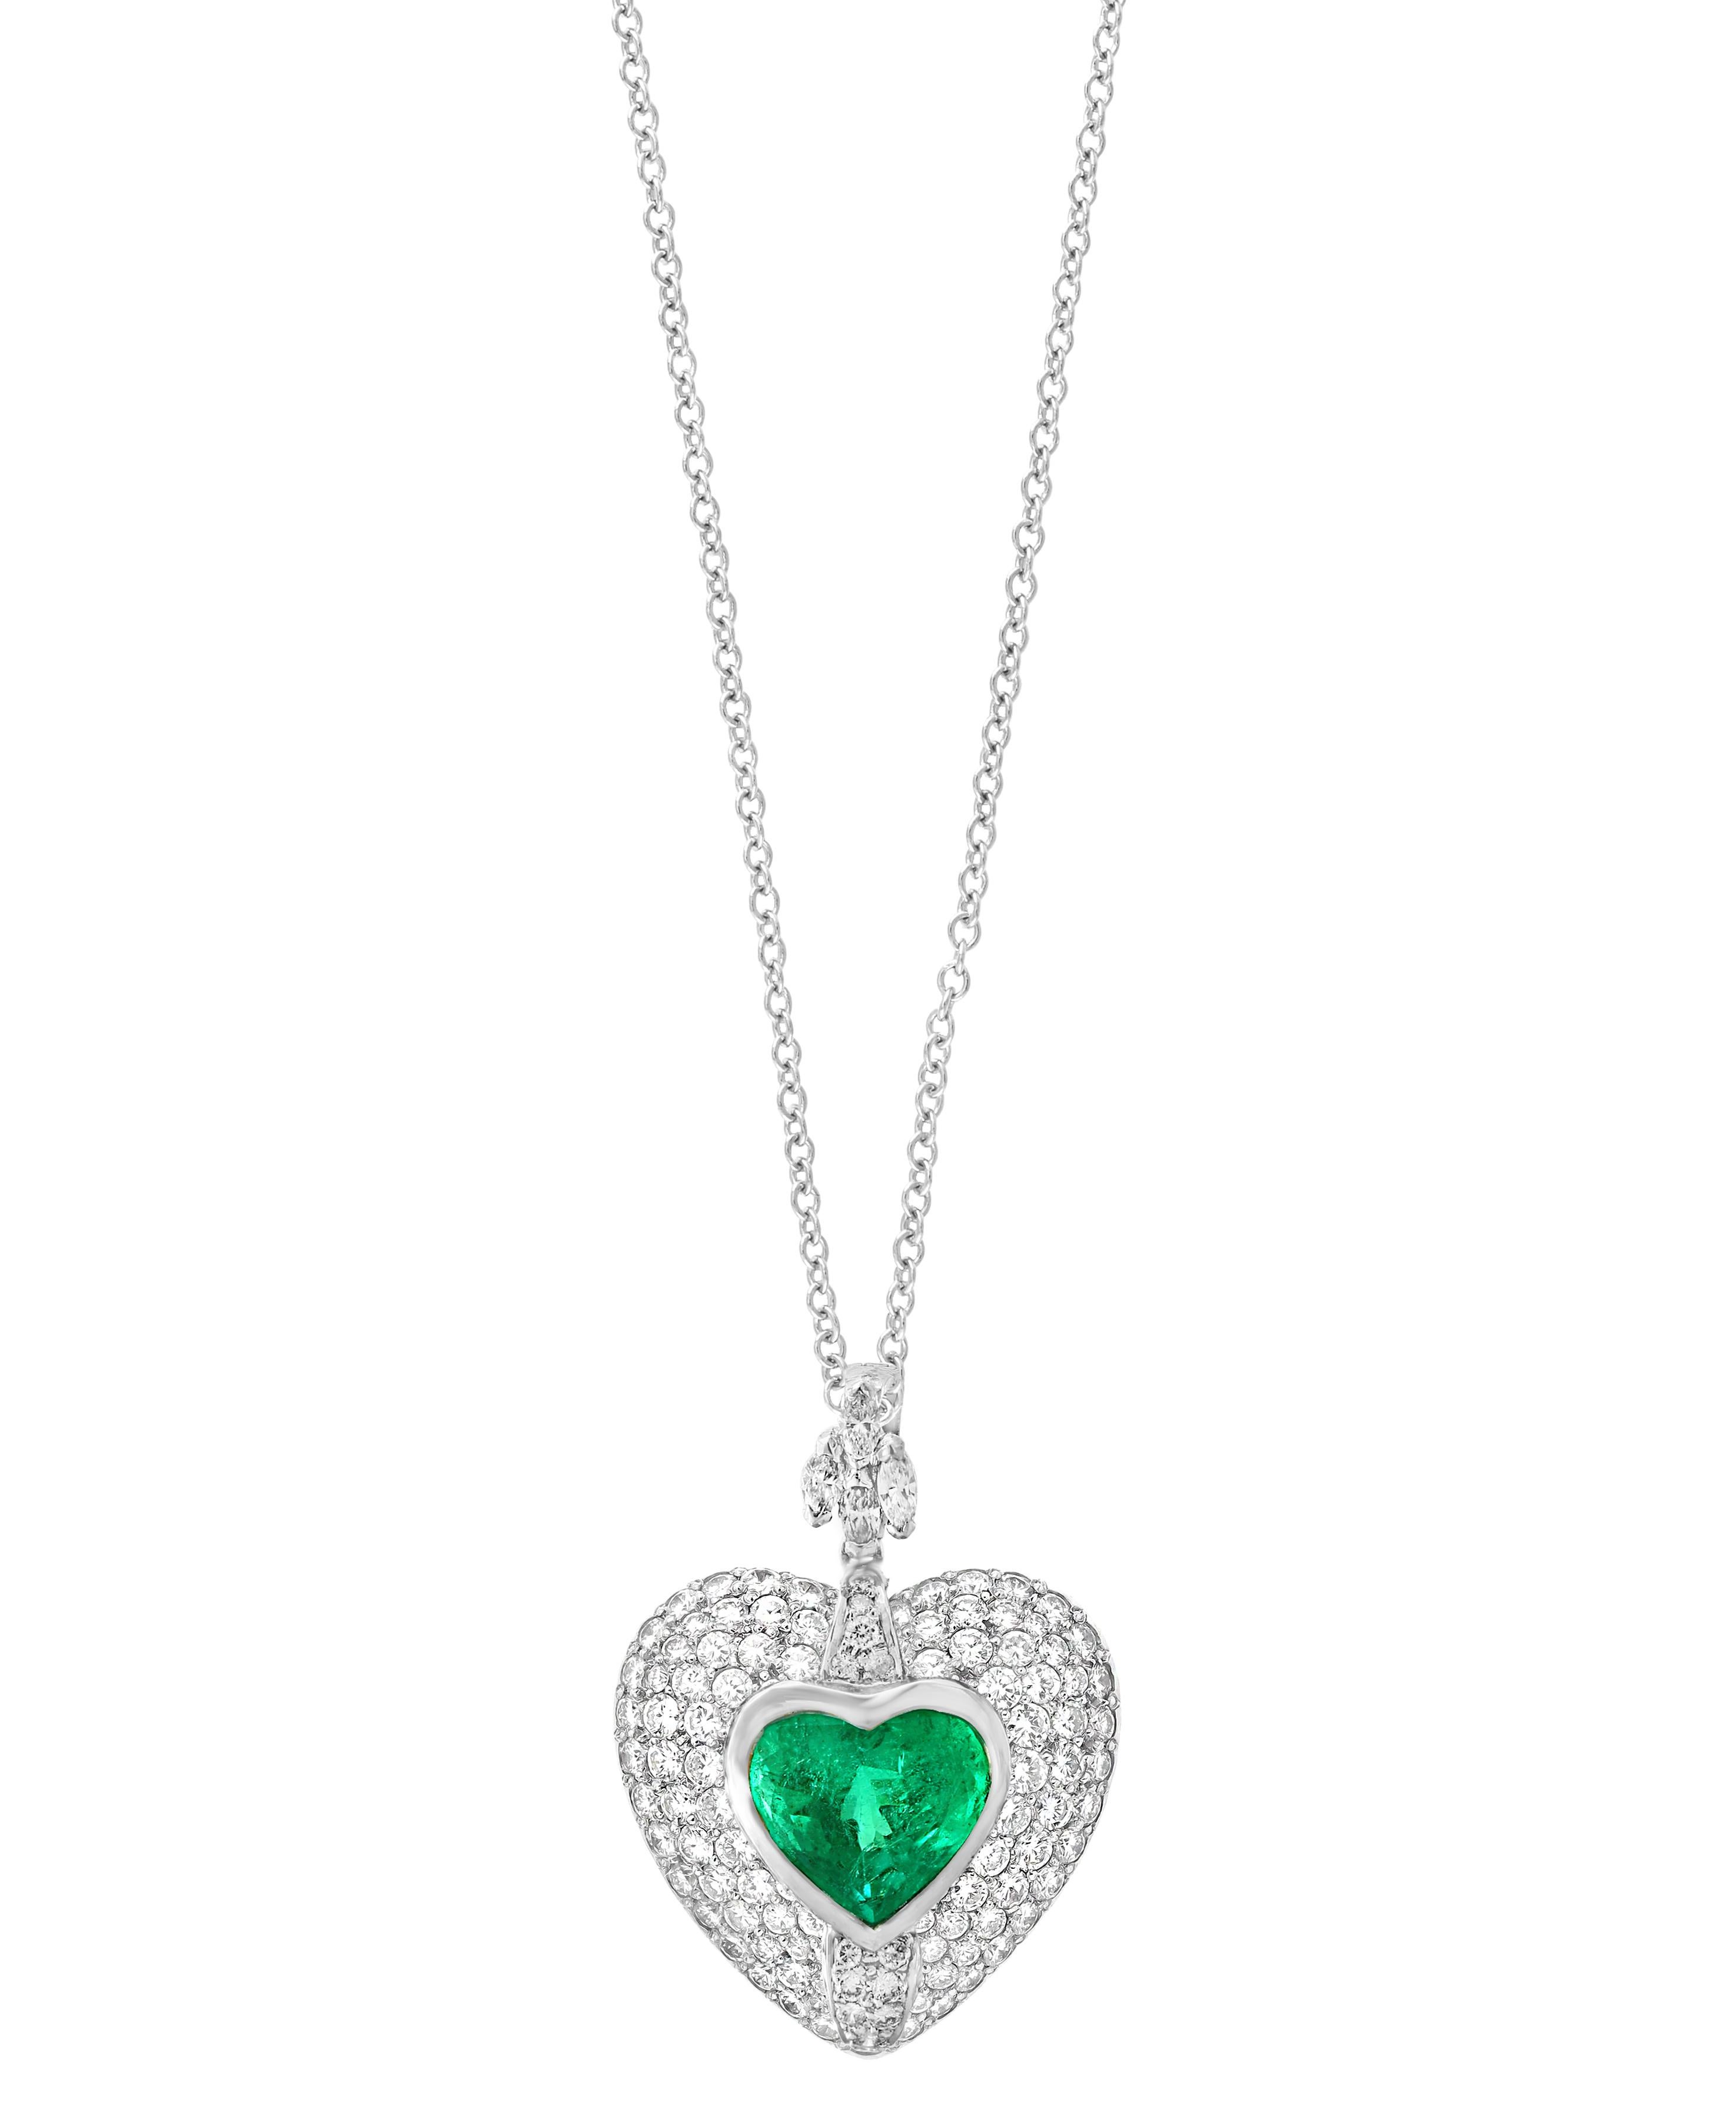 Etwa 5 Karat Herzform kolumbianischen Smaragd und Diamant-Anhänger Halskette Enhancer
Dieser spektakuläre Anhänger Halskette, bestehend aus einem einzigen Herzform Smaragde etwa 5 Karat. Der perfekte Smaragd in Herzform ist von ca. 3,93 ct Diamanten